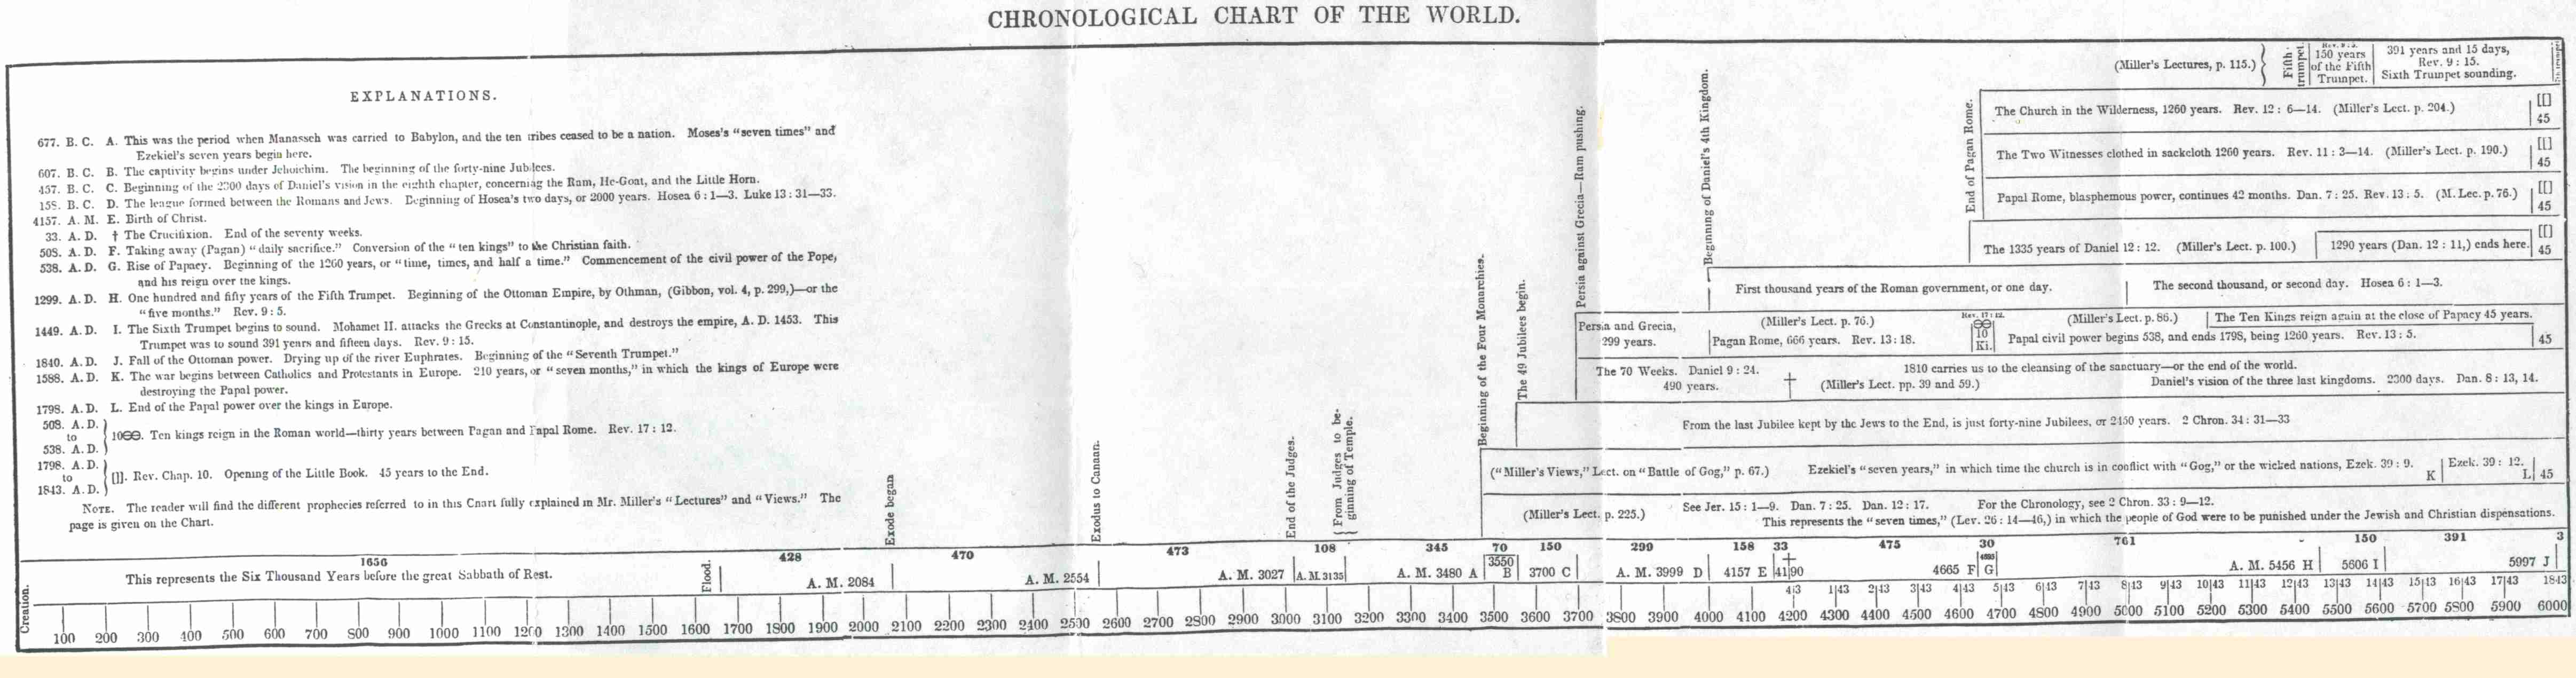 Miller's Chronological Chart of the World.